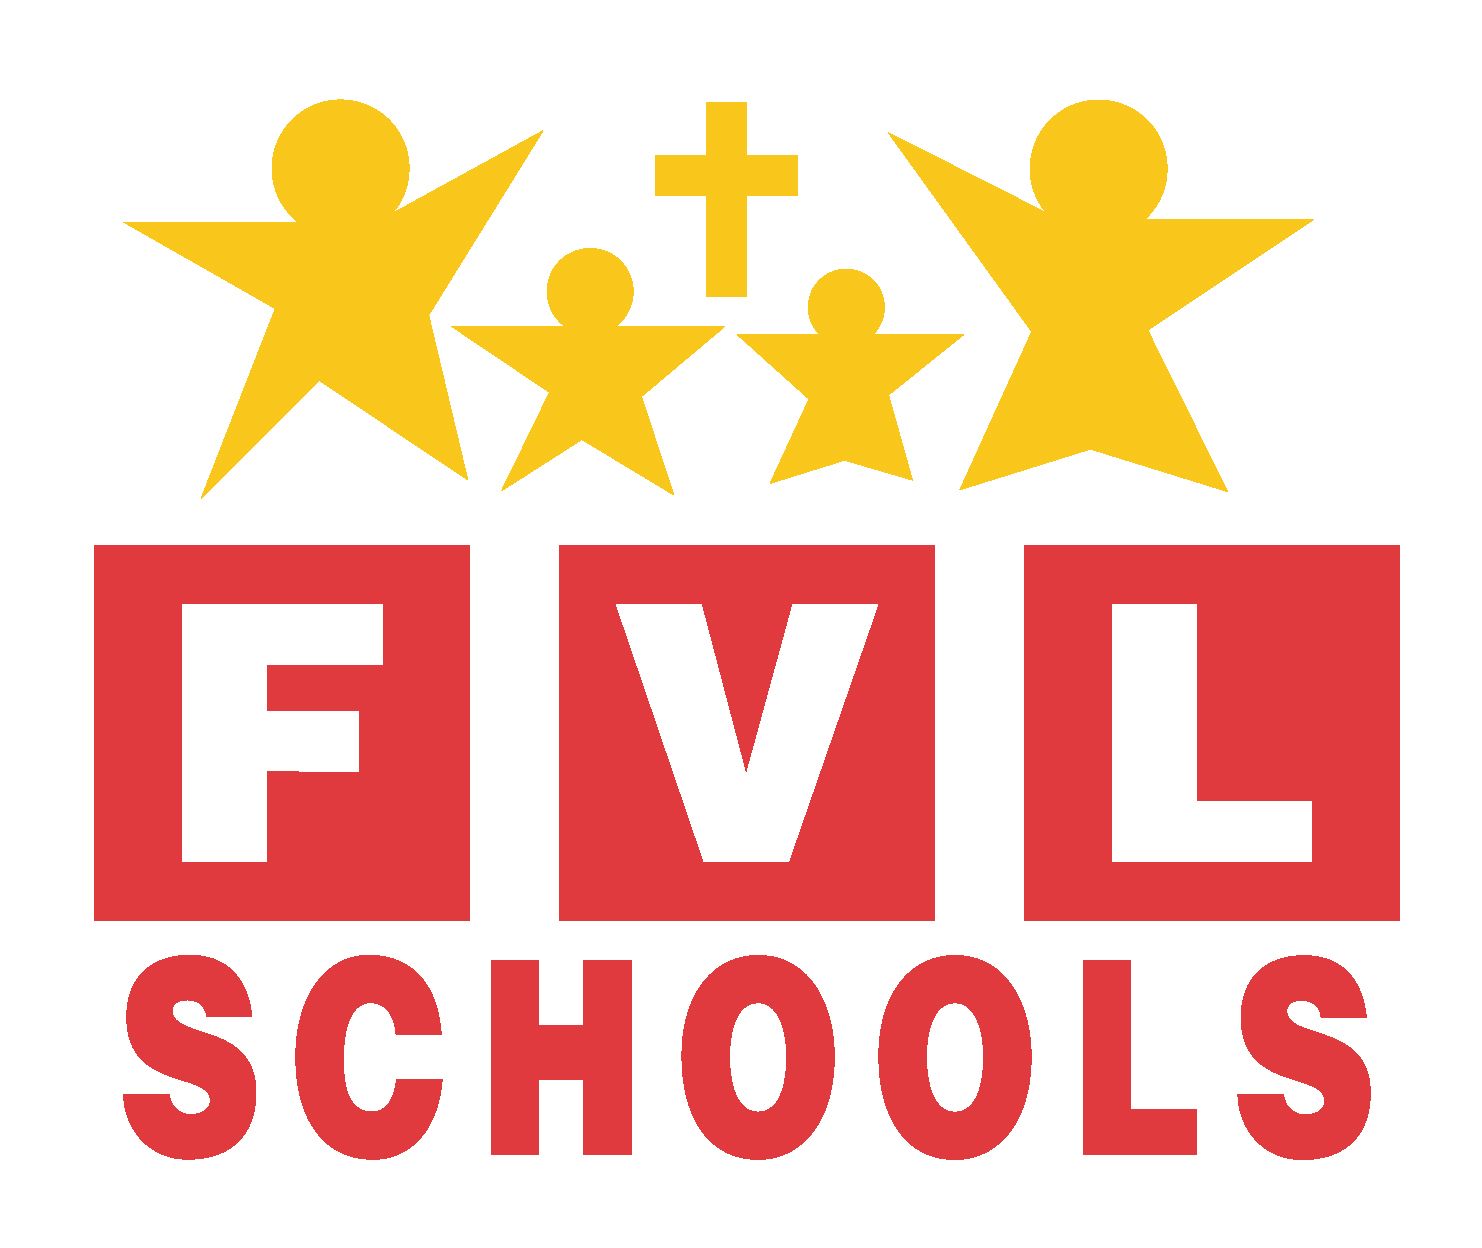 FVL Schools logo